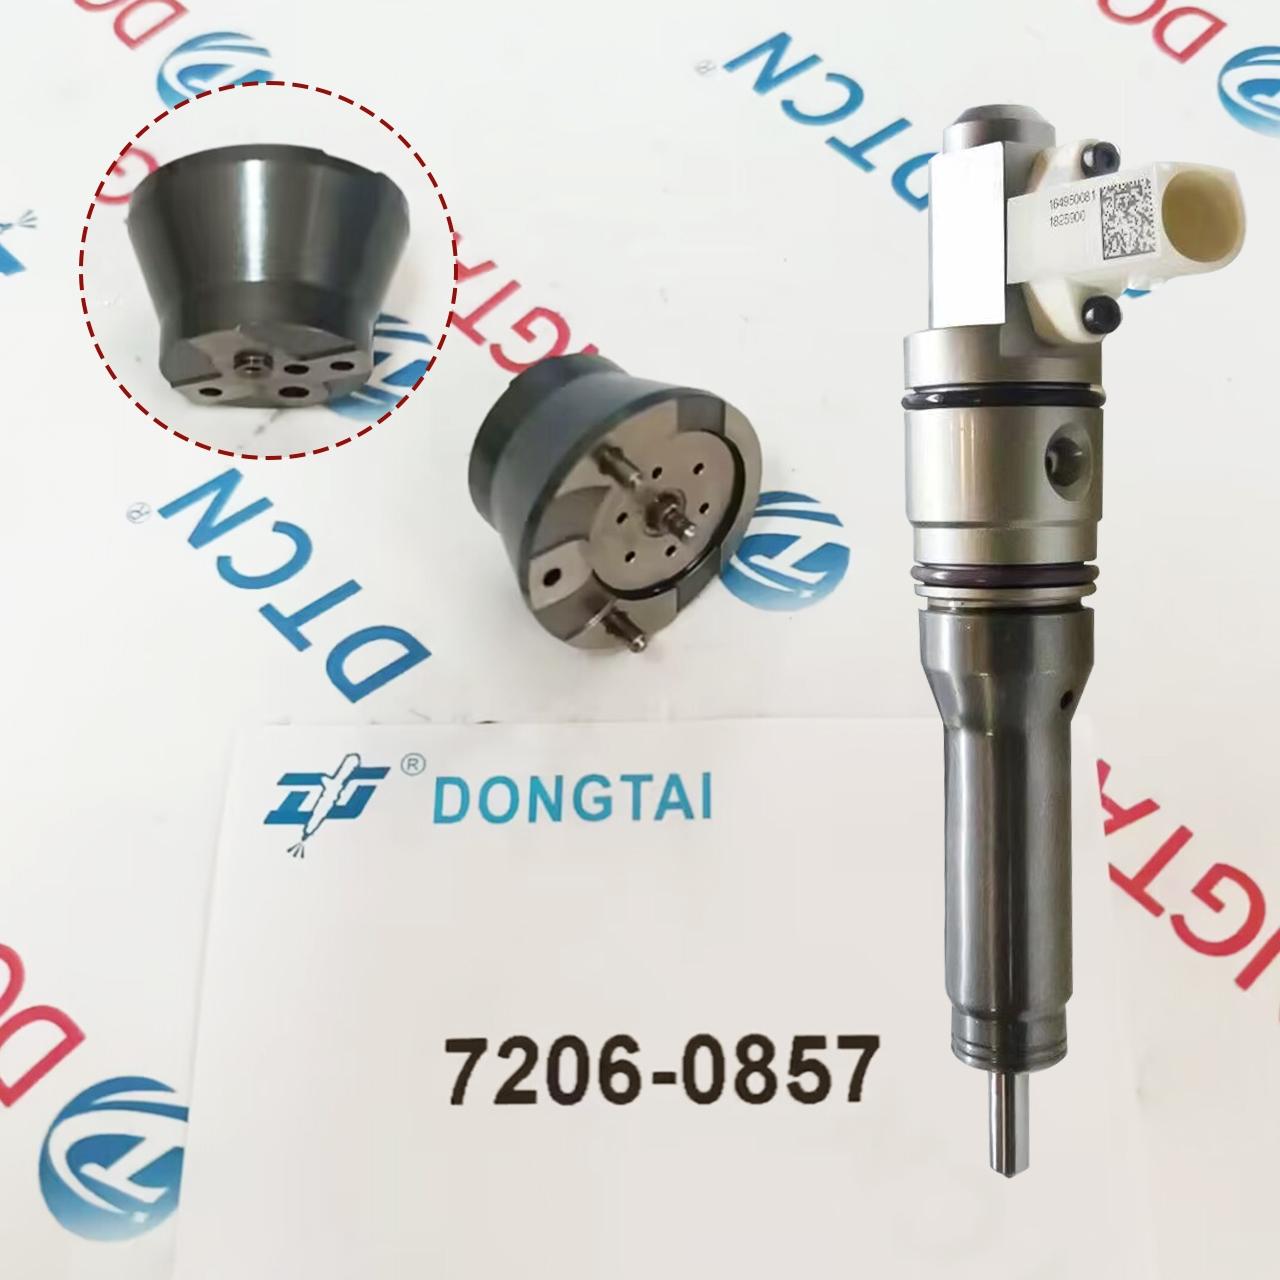 NO.511(10-4) Delphi Nozzle Control Valve 7206-0857 for Smart Injector BEBJ1B00001 DAF MX